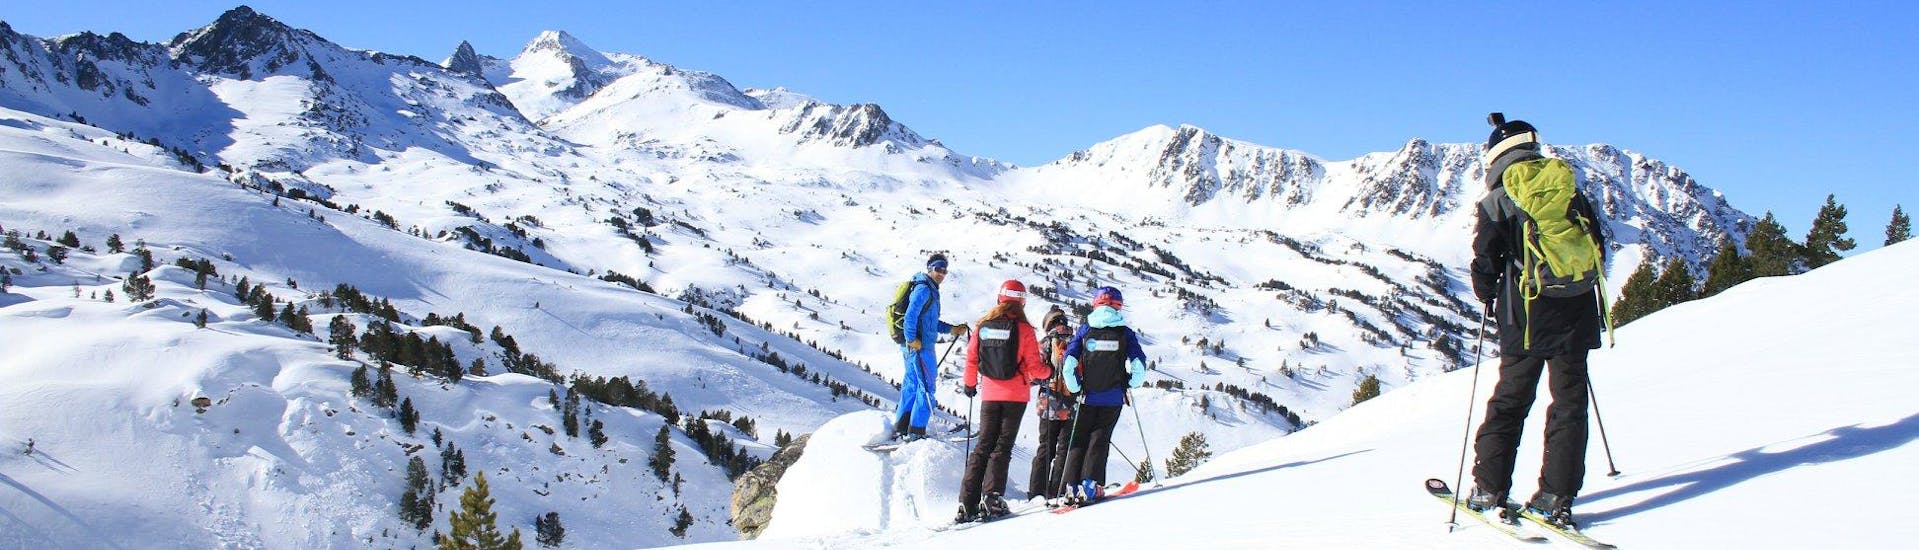 Skilessen voor volwassenen vanaf 5 jaar - beginners.